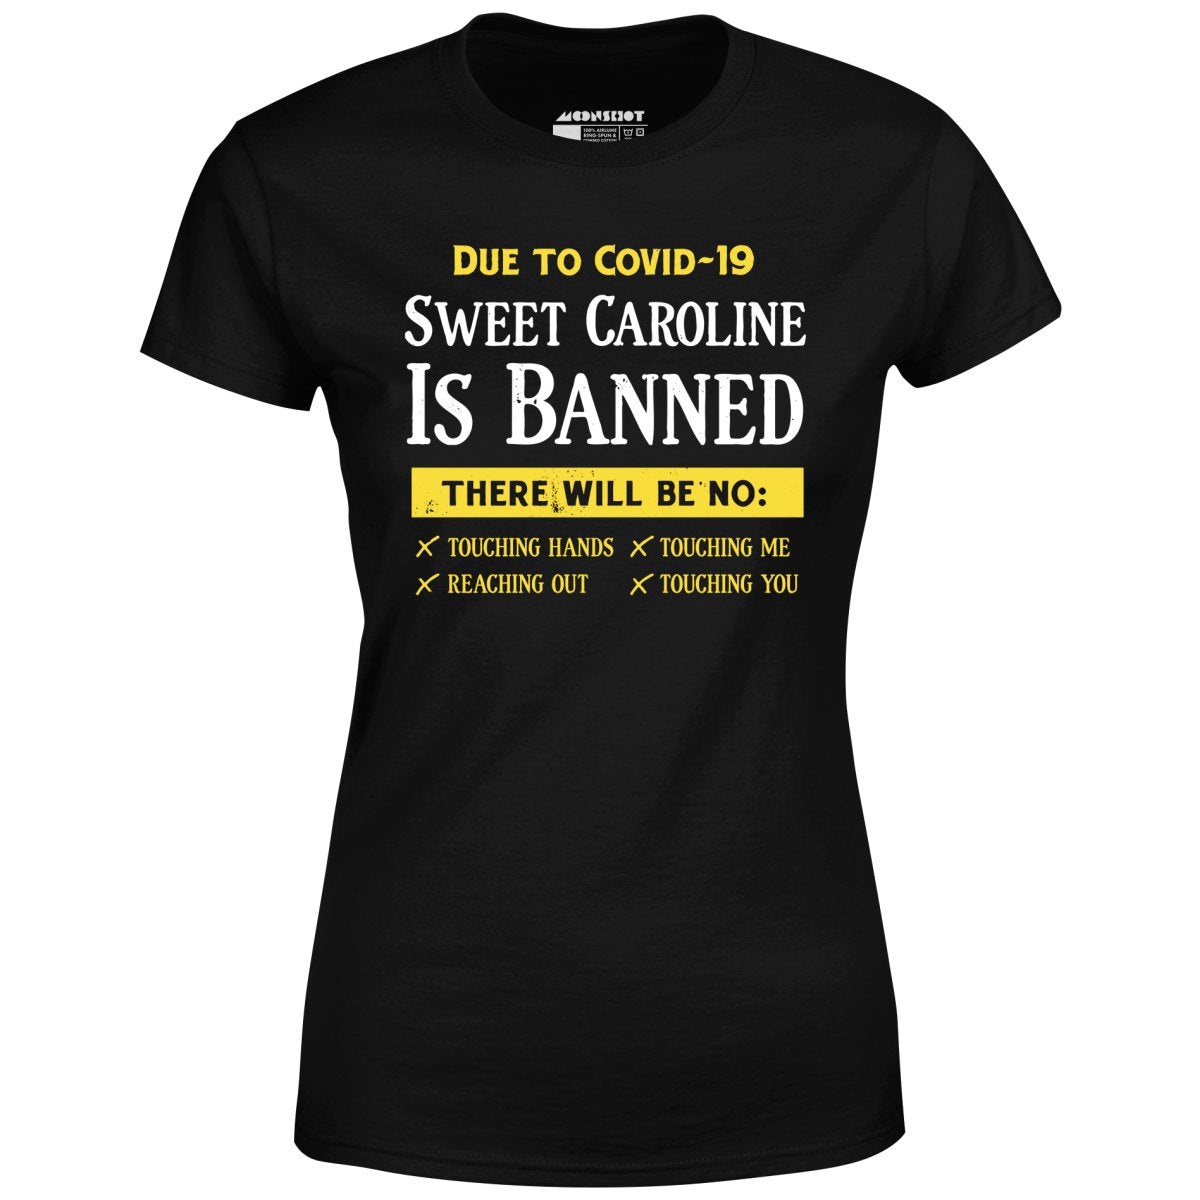 Sweet Caroline is Banned - Women's T-Shirt